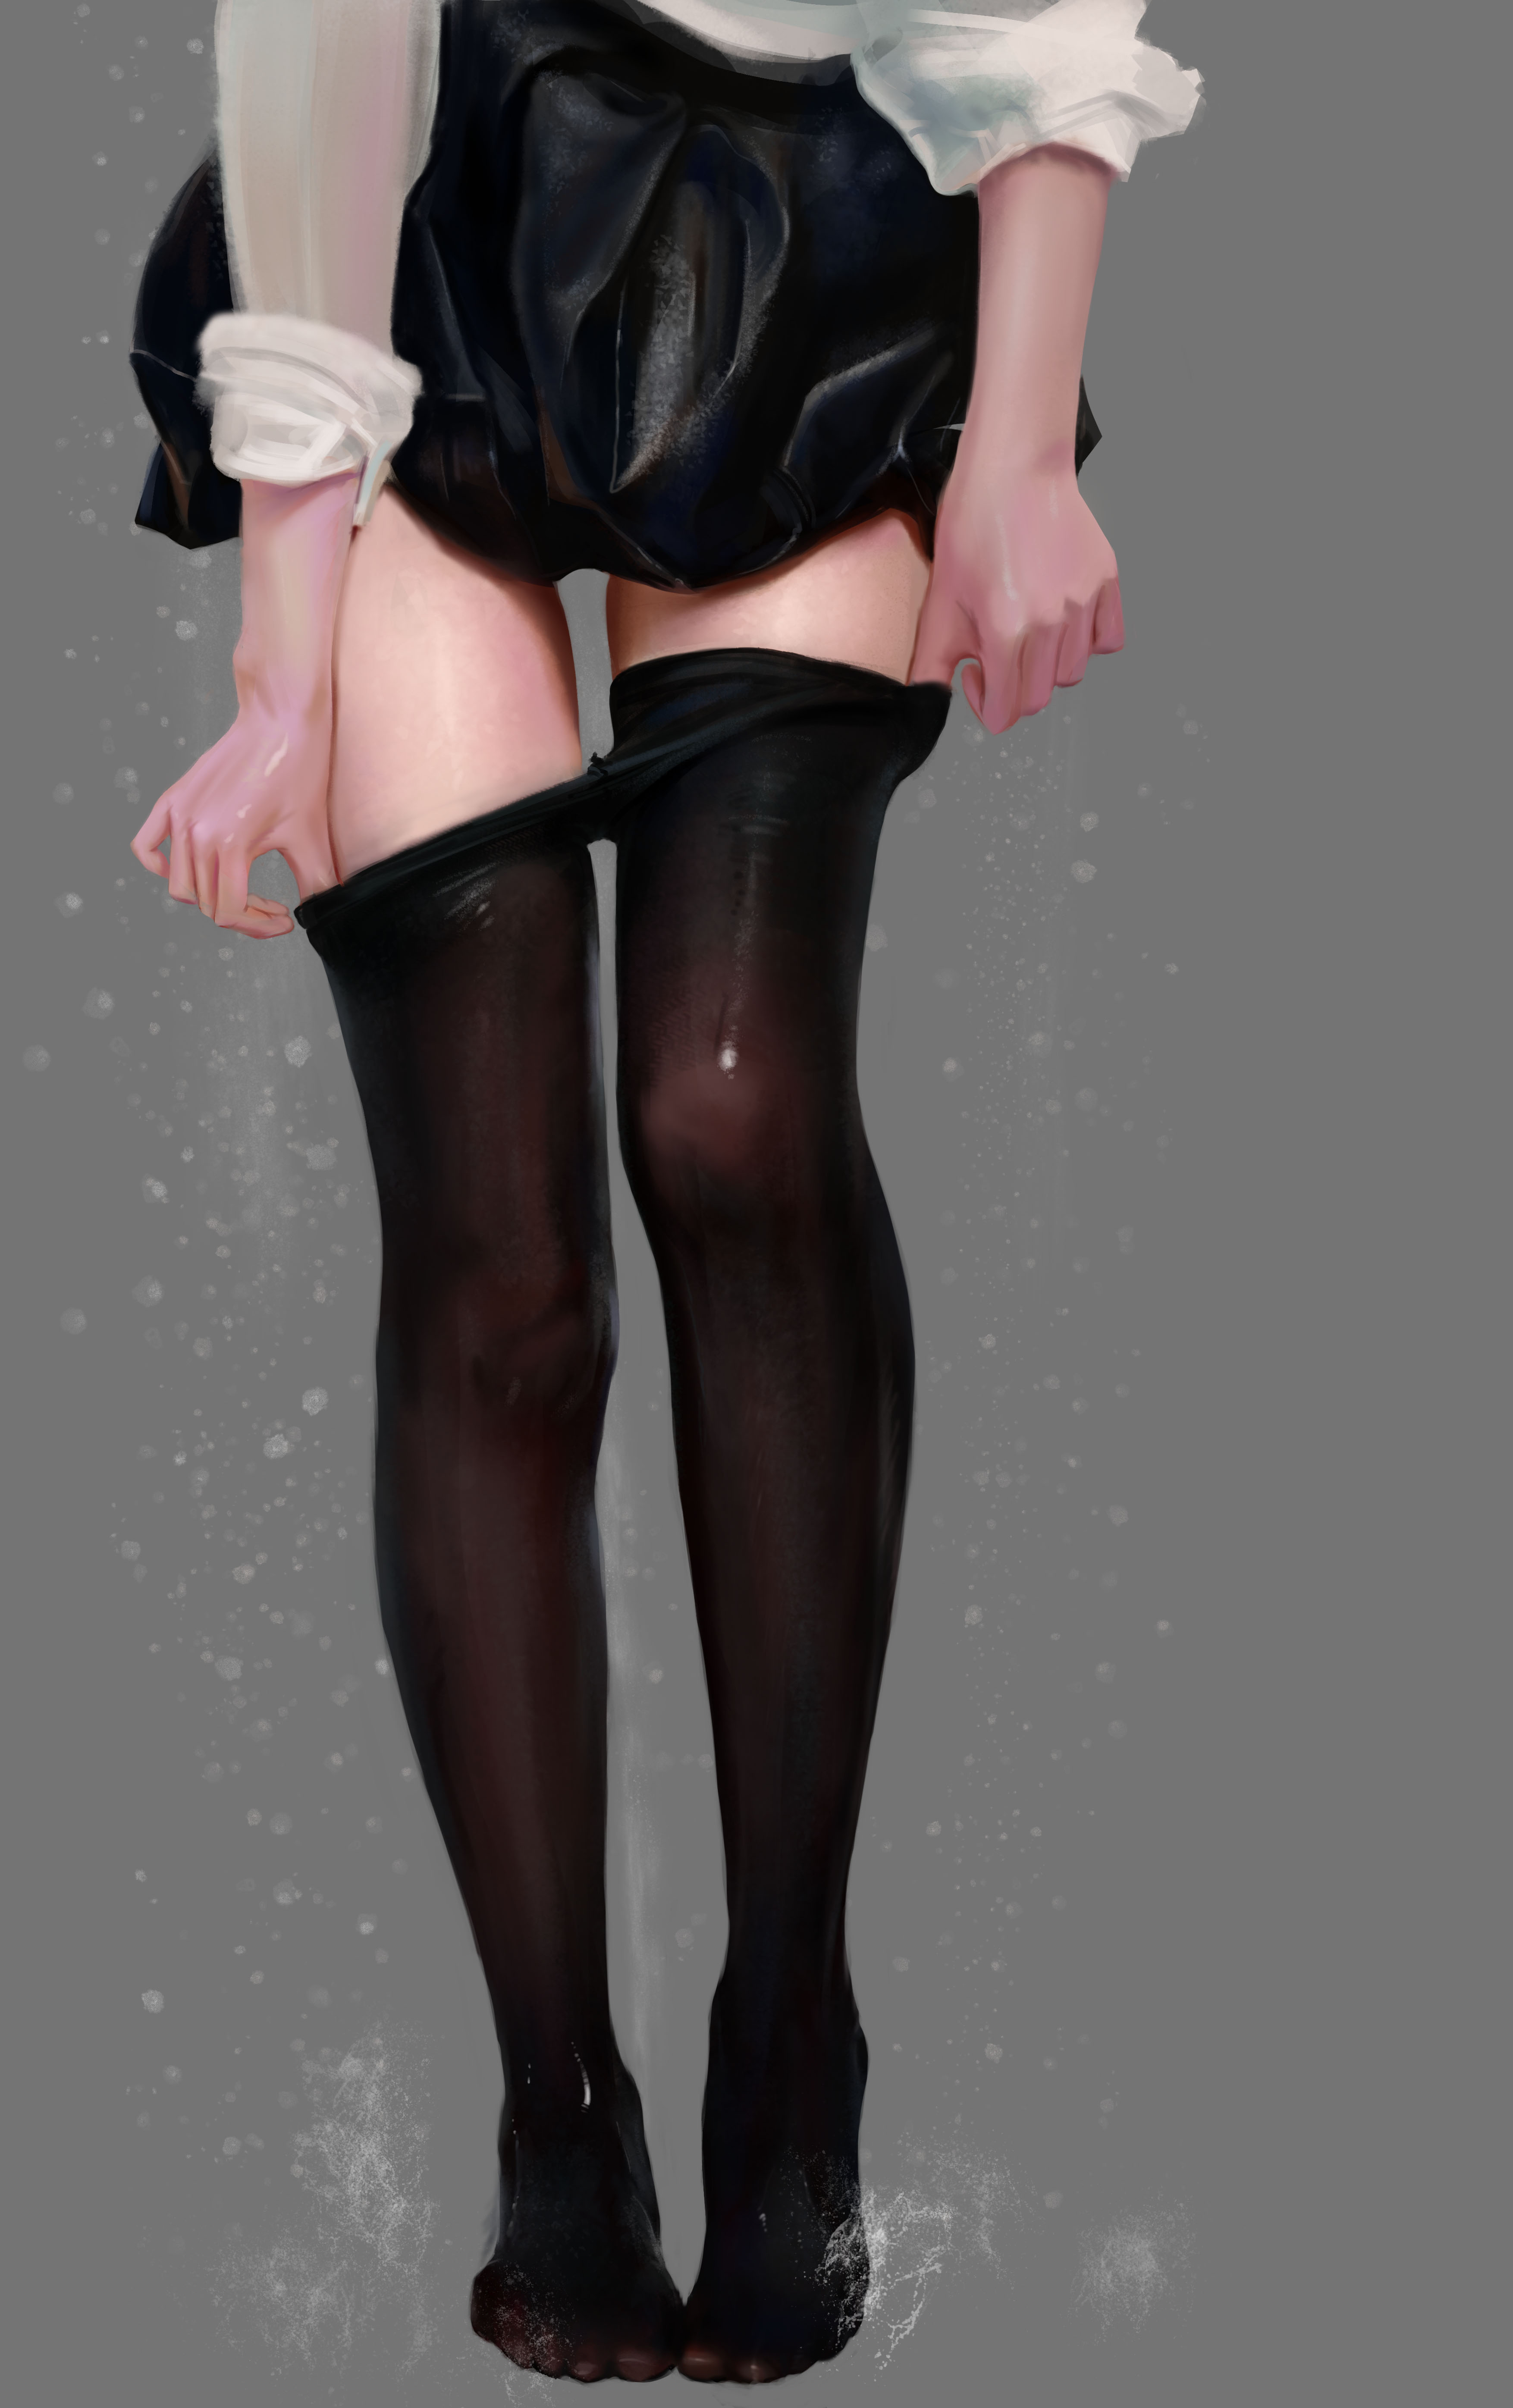 Anime 3508x5584 black stockings legs school skirt wet body women stockings black skirts skirt thighs white shirt